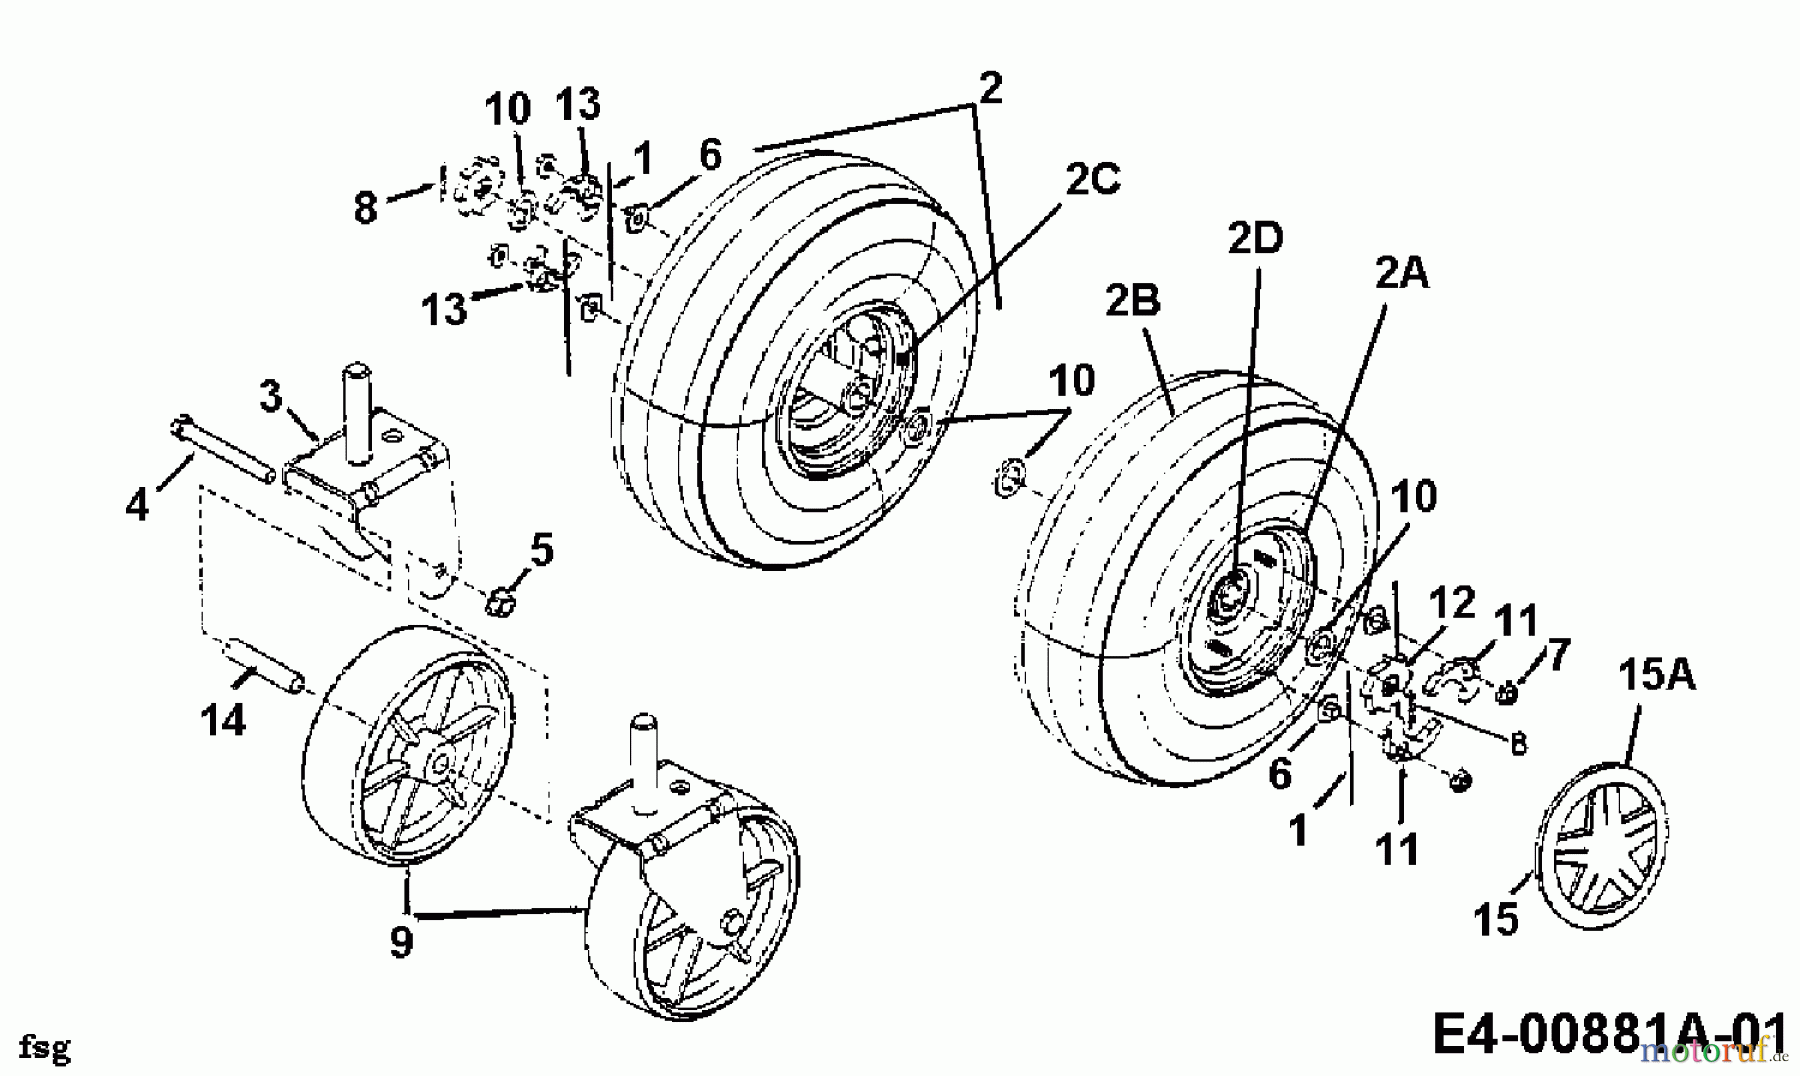  Gutbrod Leaf blower, Blower vac 202 24A-202B604  (2000) Wheels